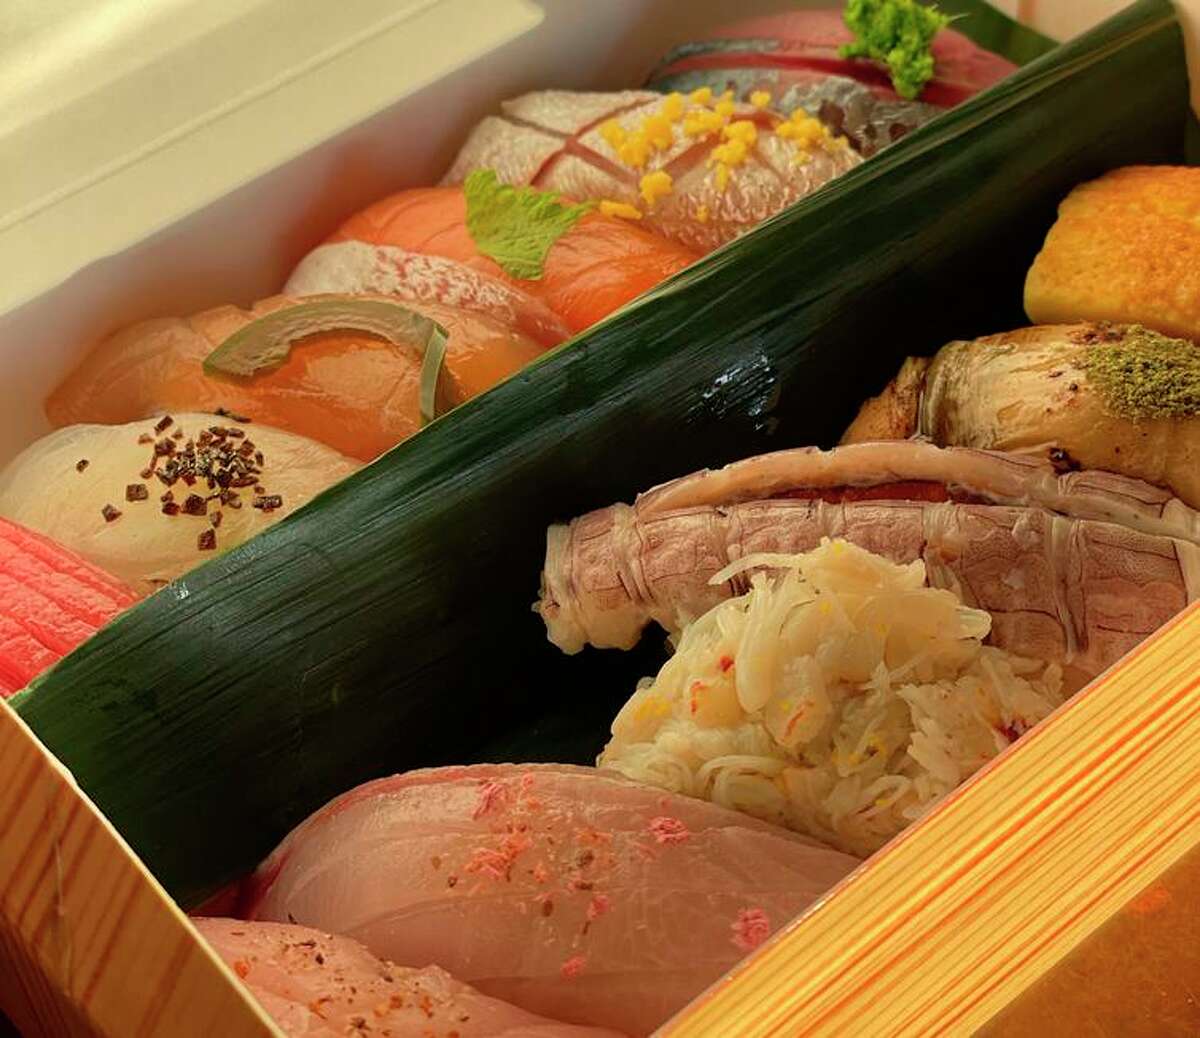 寿司沙龙(Sushi Salon)的外卖料理，这是由宇津前员工野中佐二(Joji Nonaka)和大泽安娜(Anna Osawa)开的快闪店。